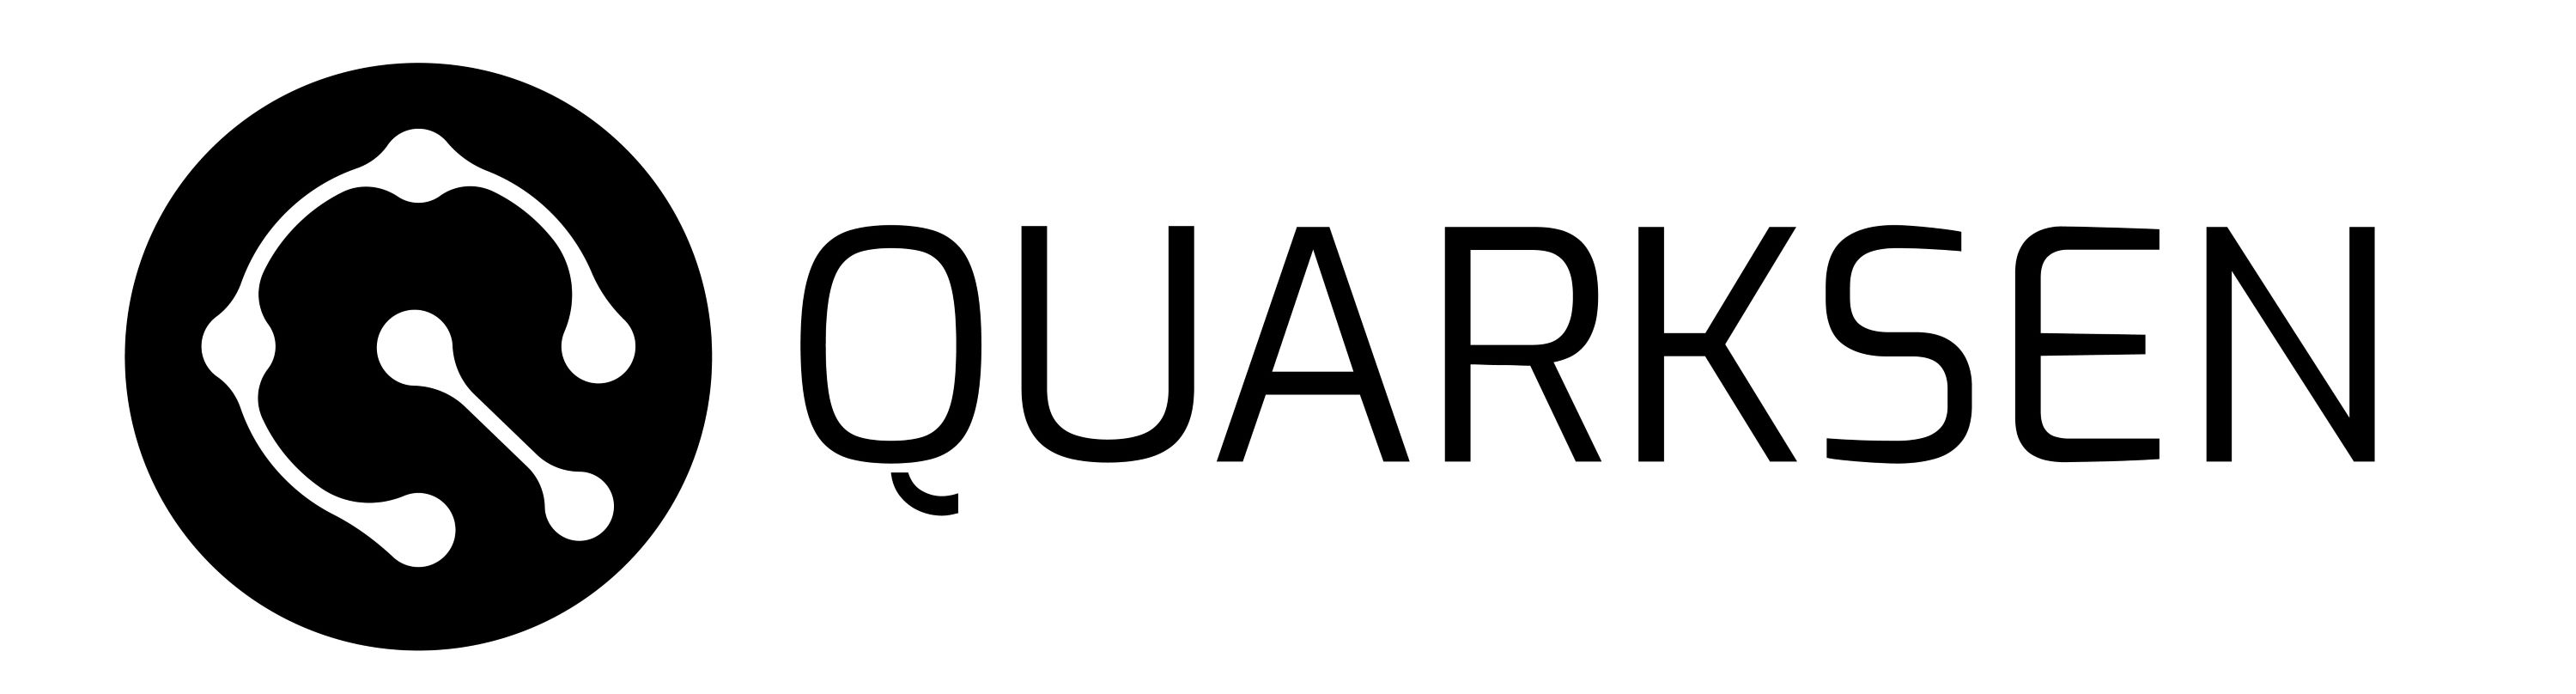 Quarksen Logo